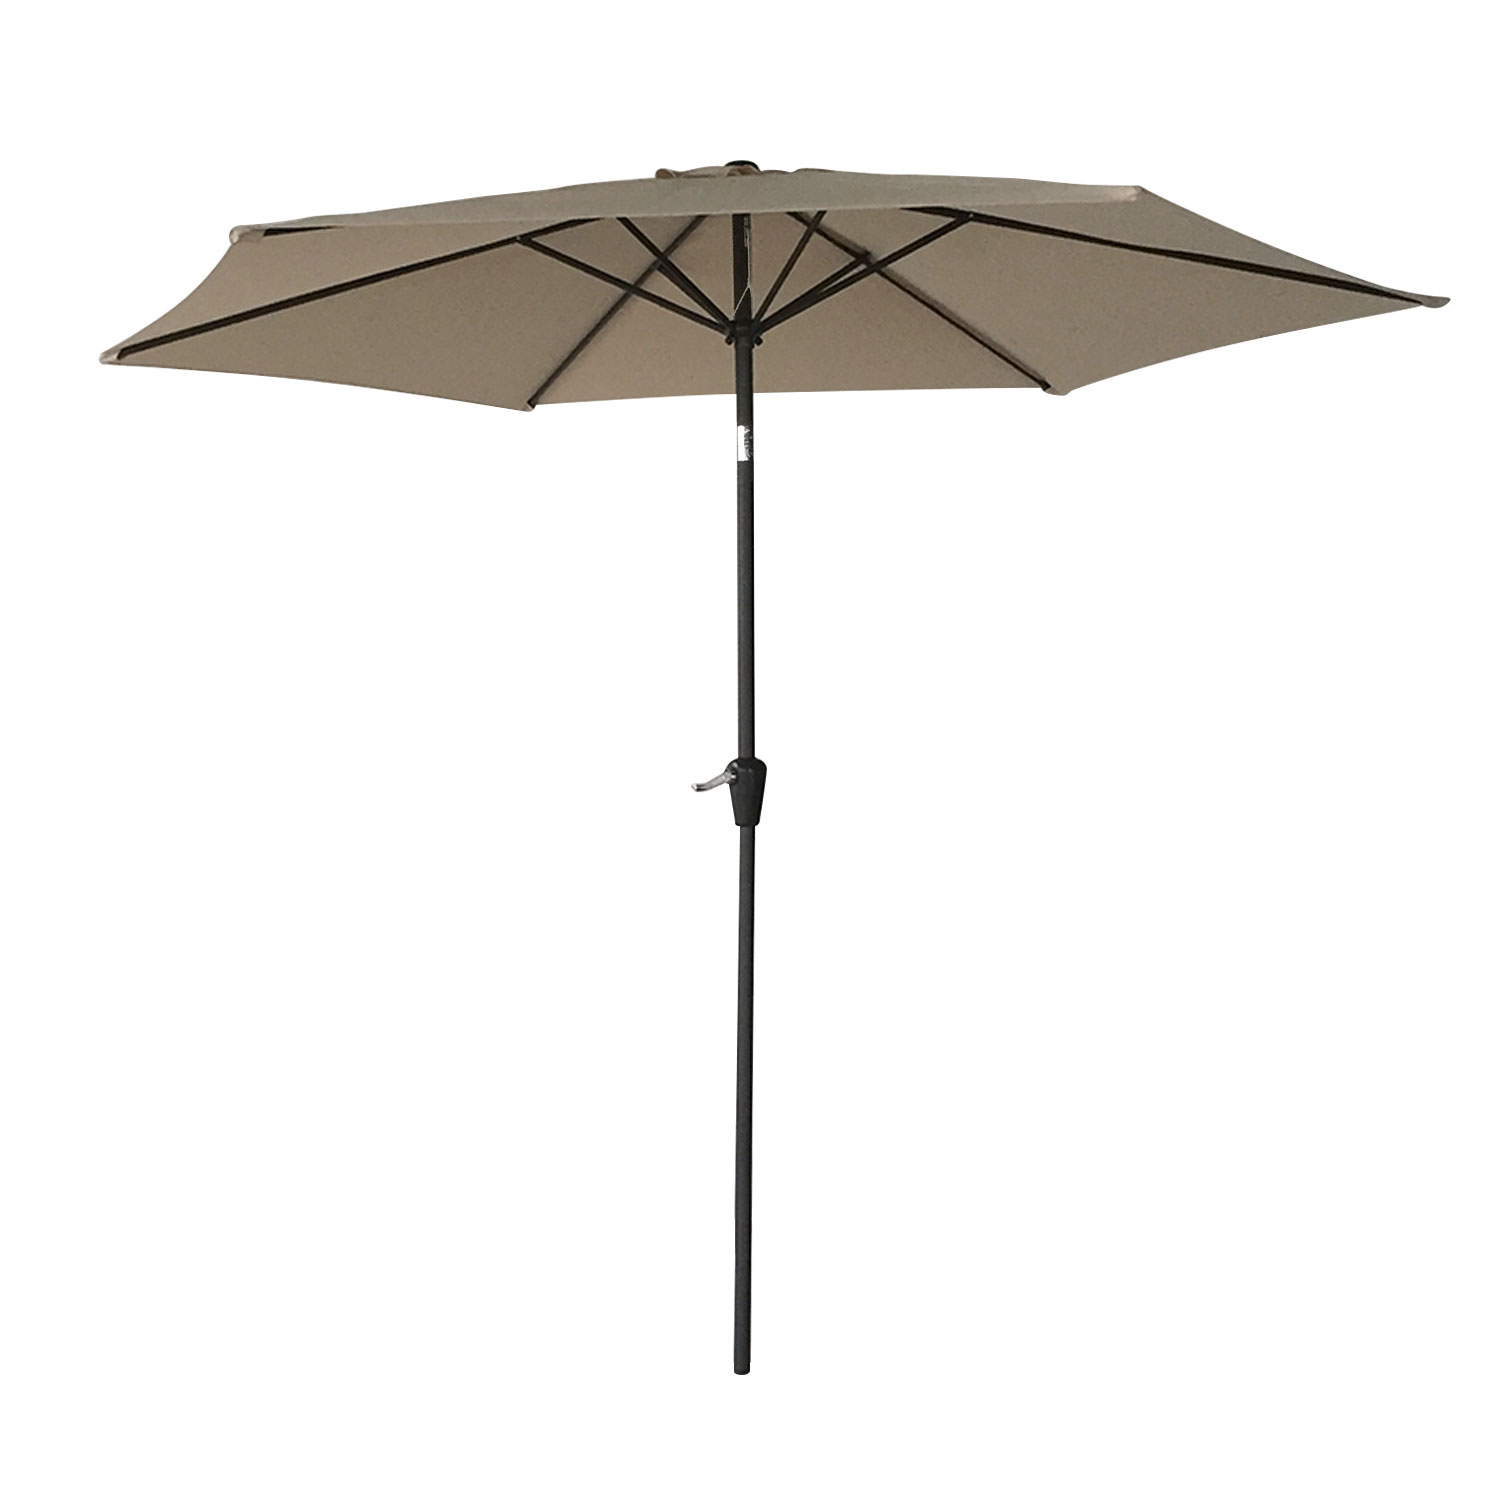 HAPUNA ombrello rotondo diritto 2,70m diametro taupe